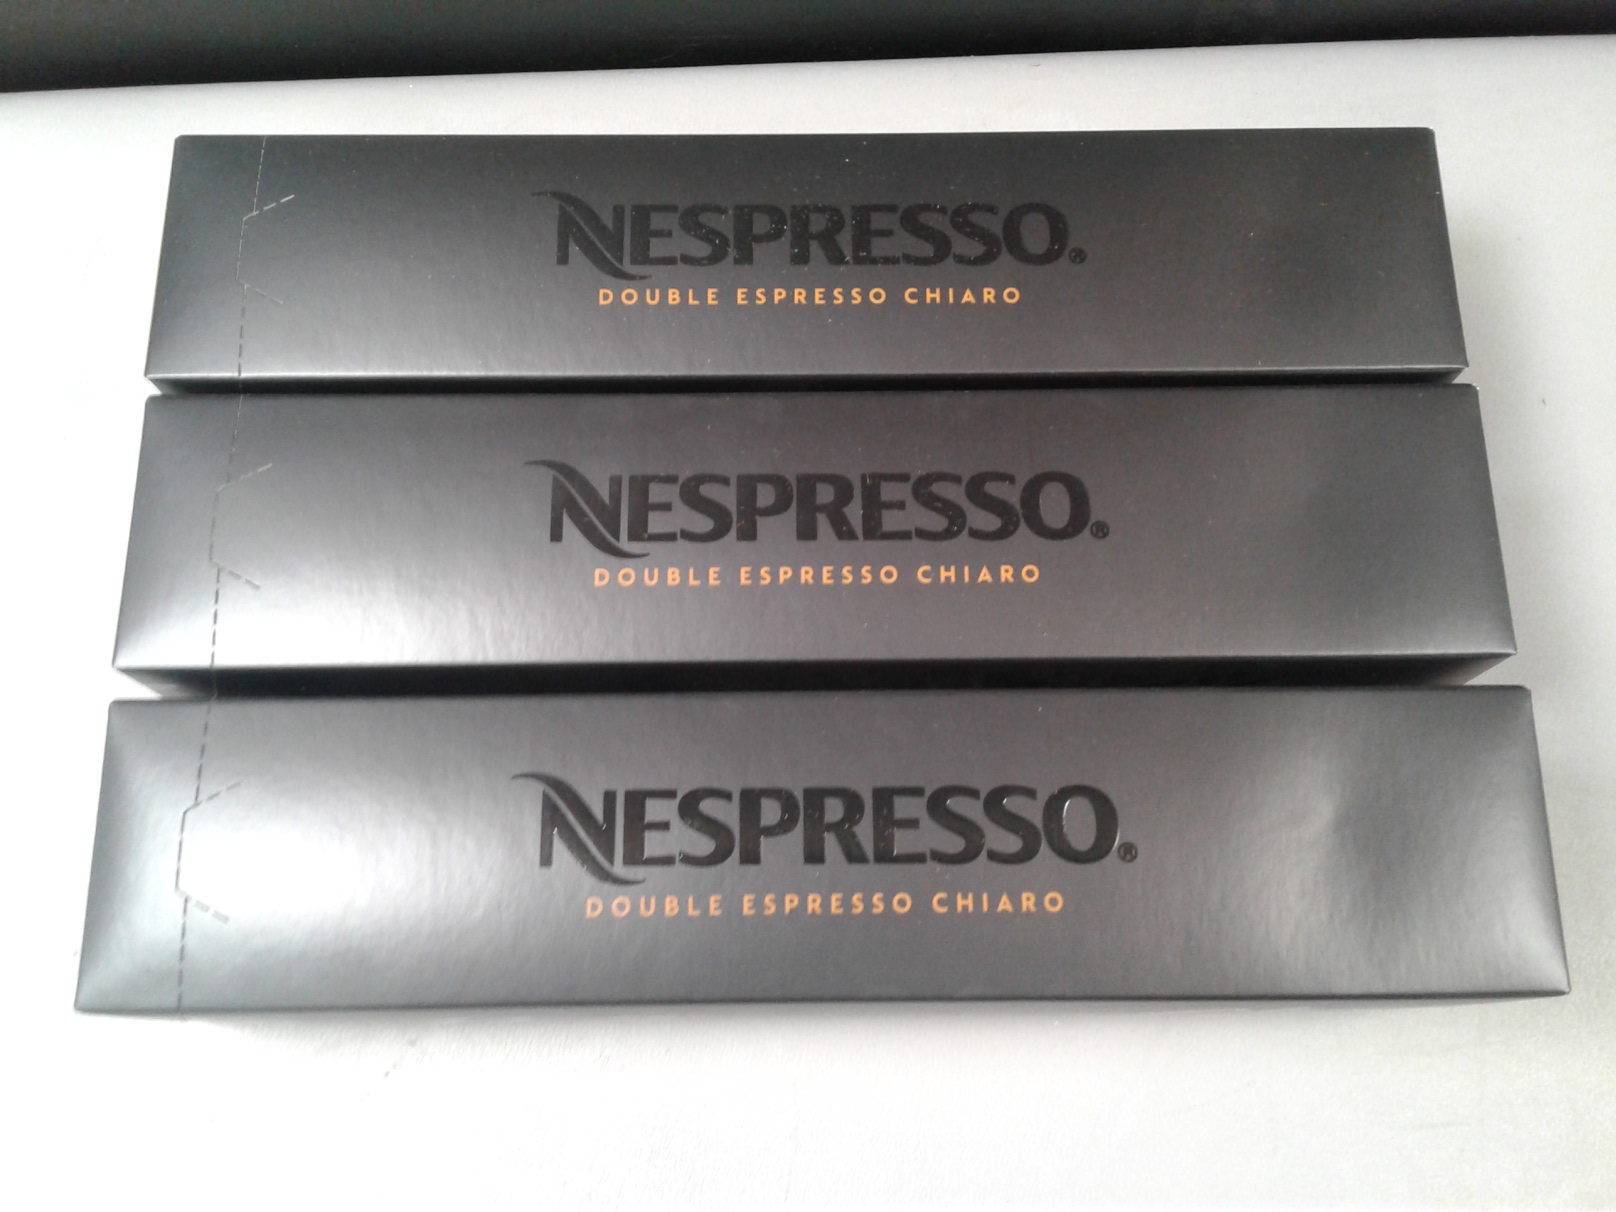  Nespresso Capsules VertuoLine, Double Espresso Chiaro